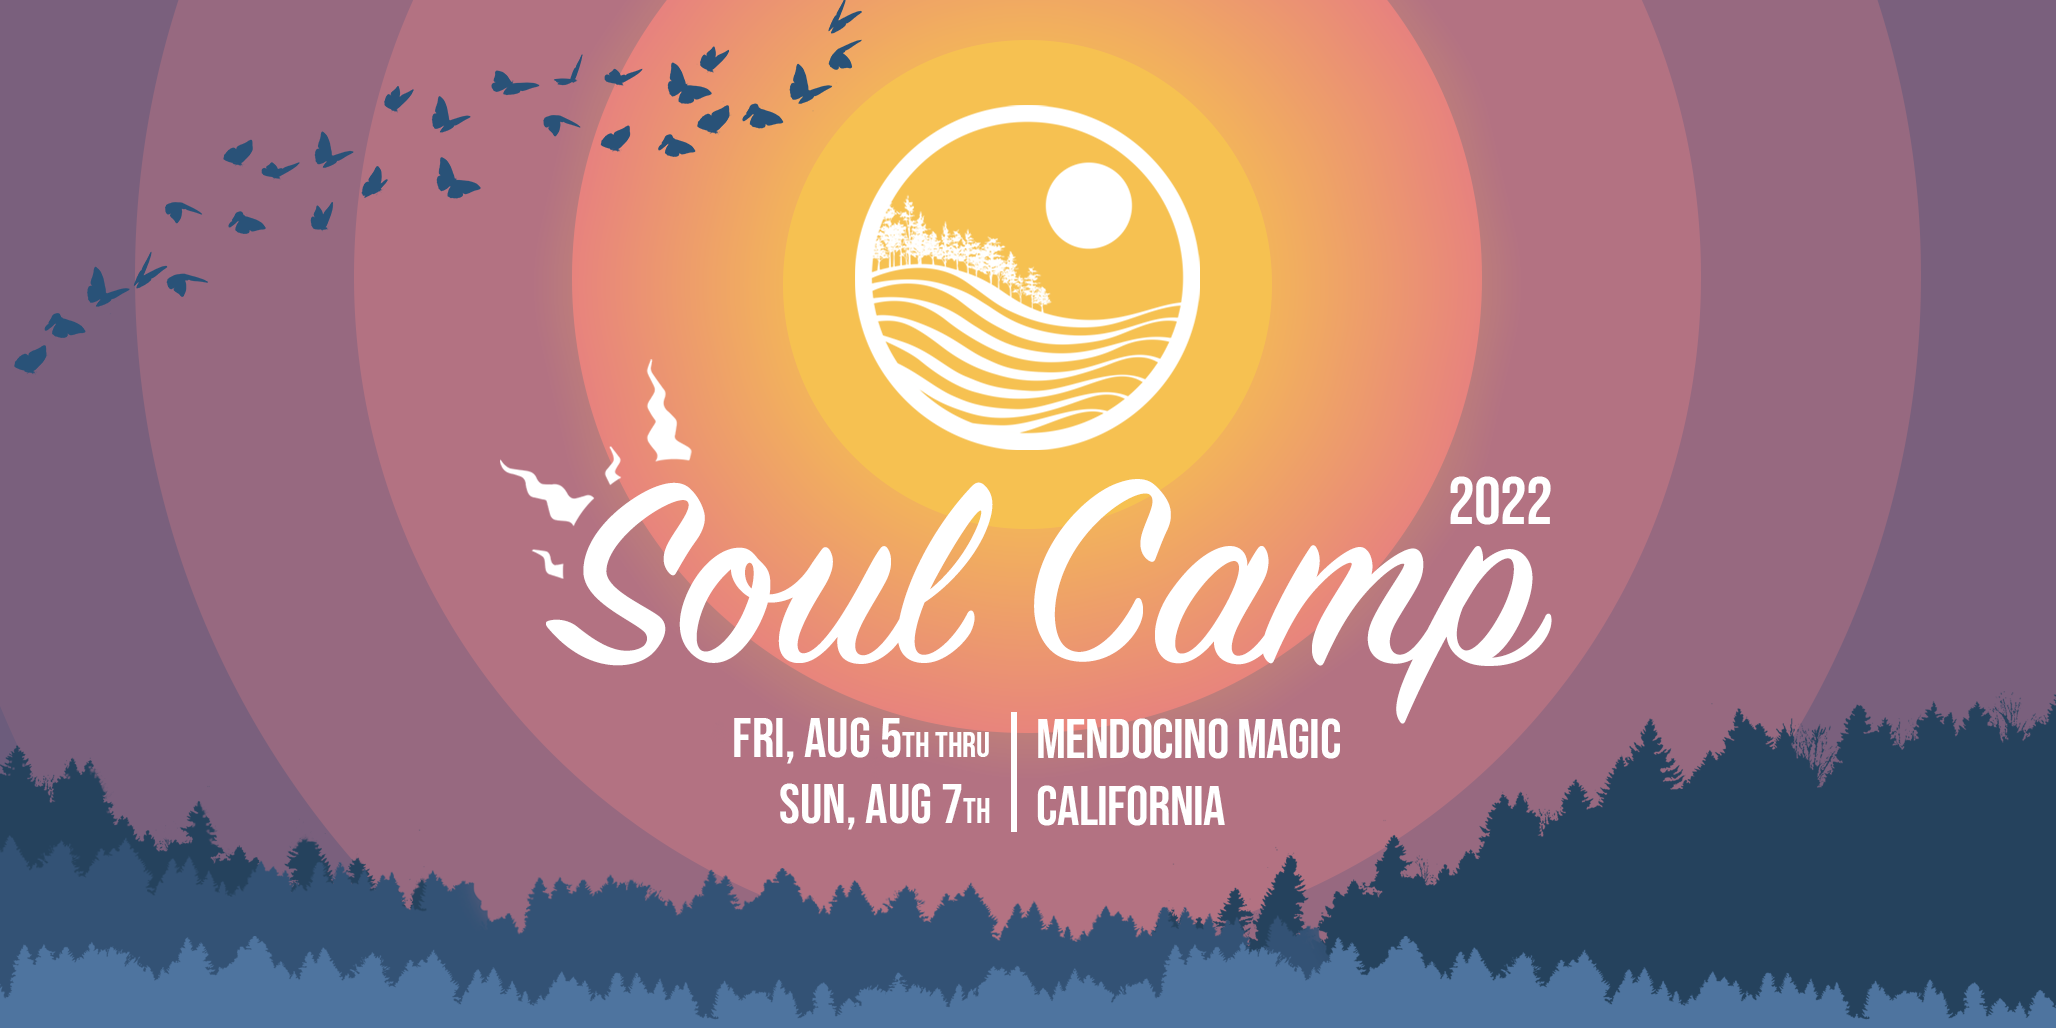 Soul Camp 2023! Aug. 4th6th Mendocino Magic